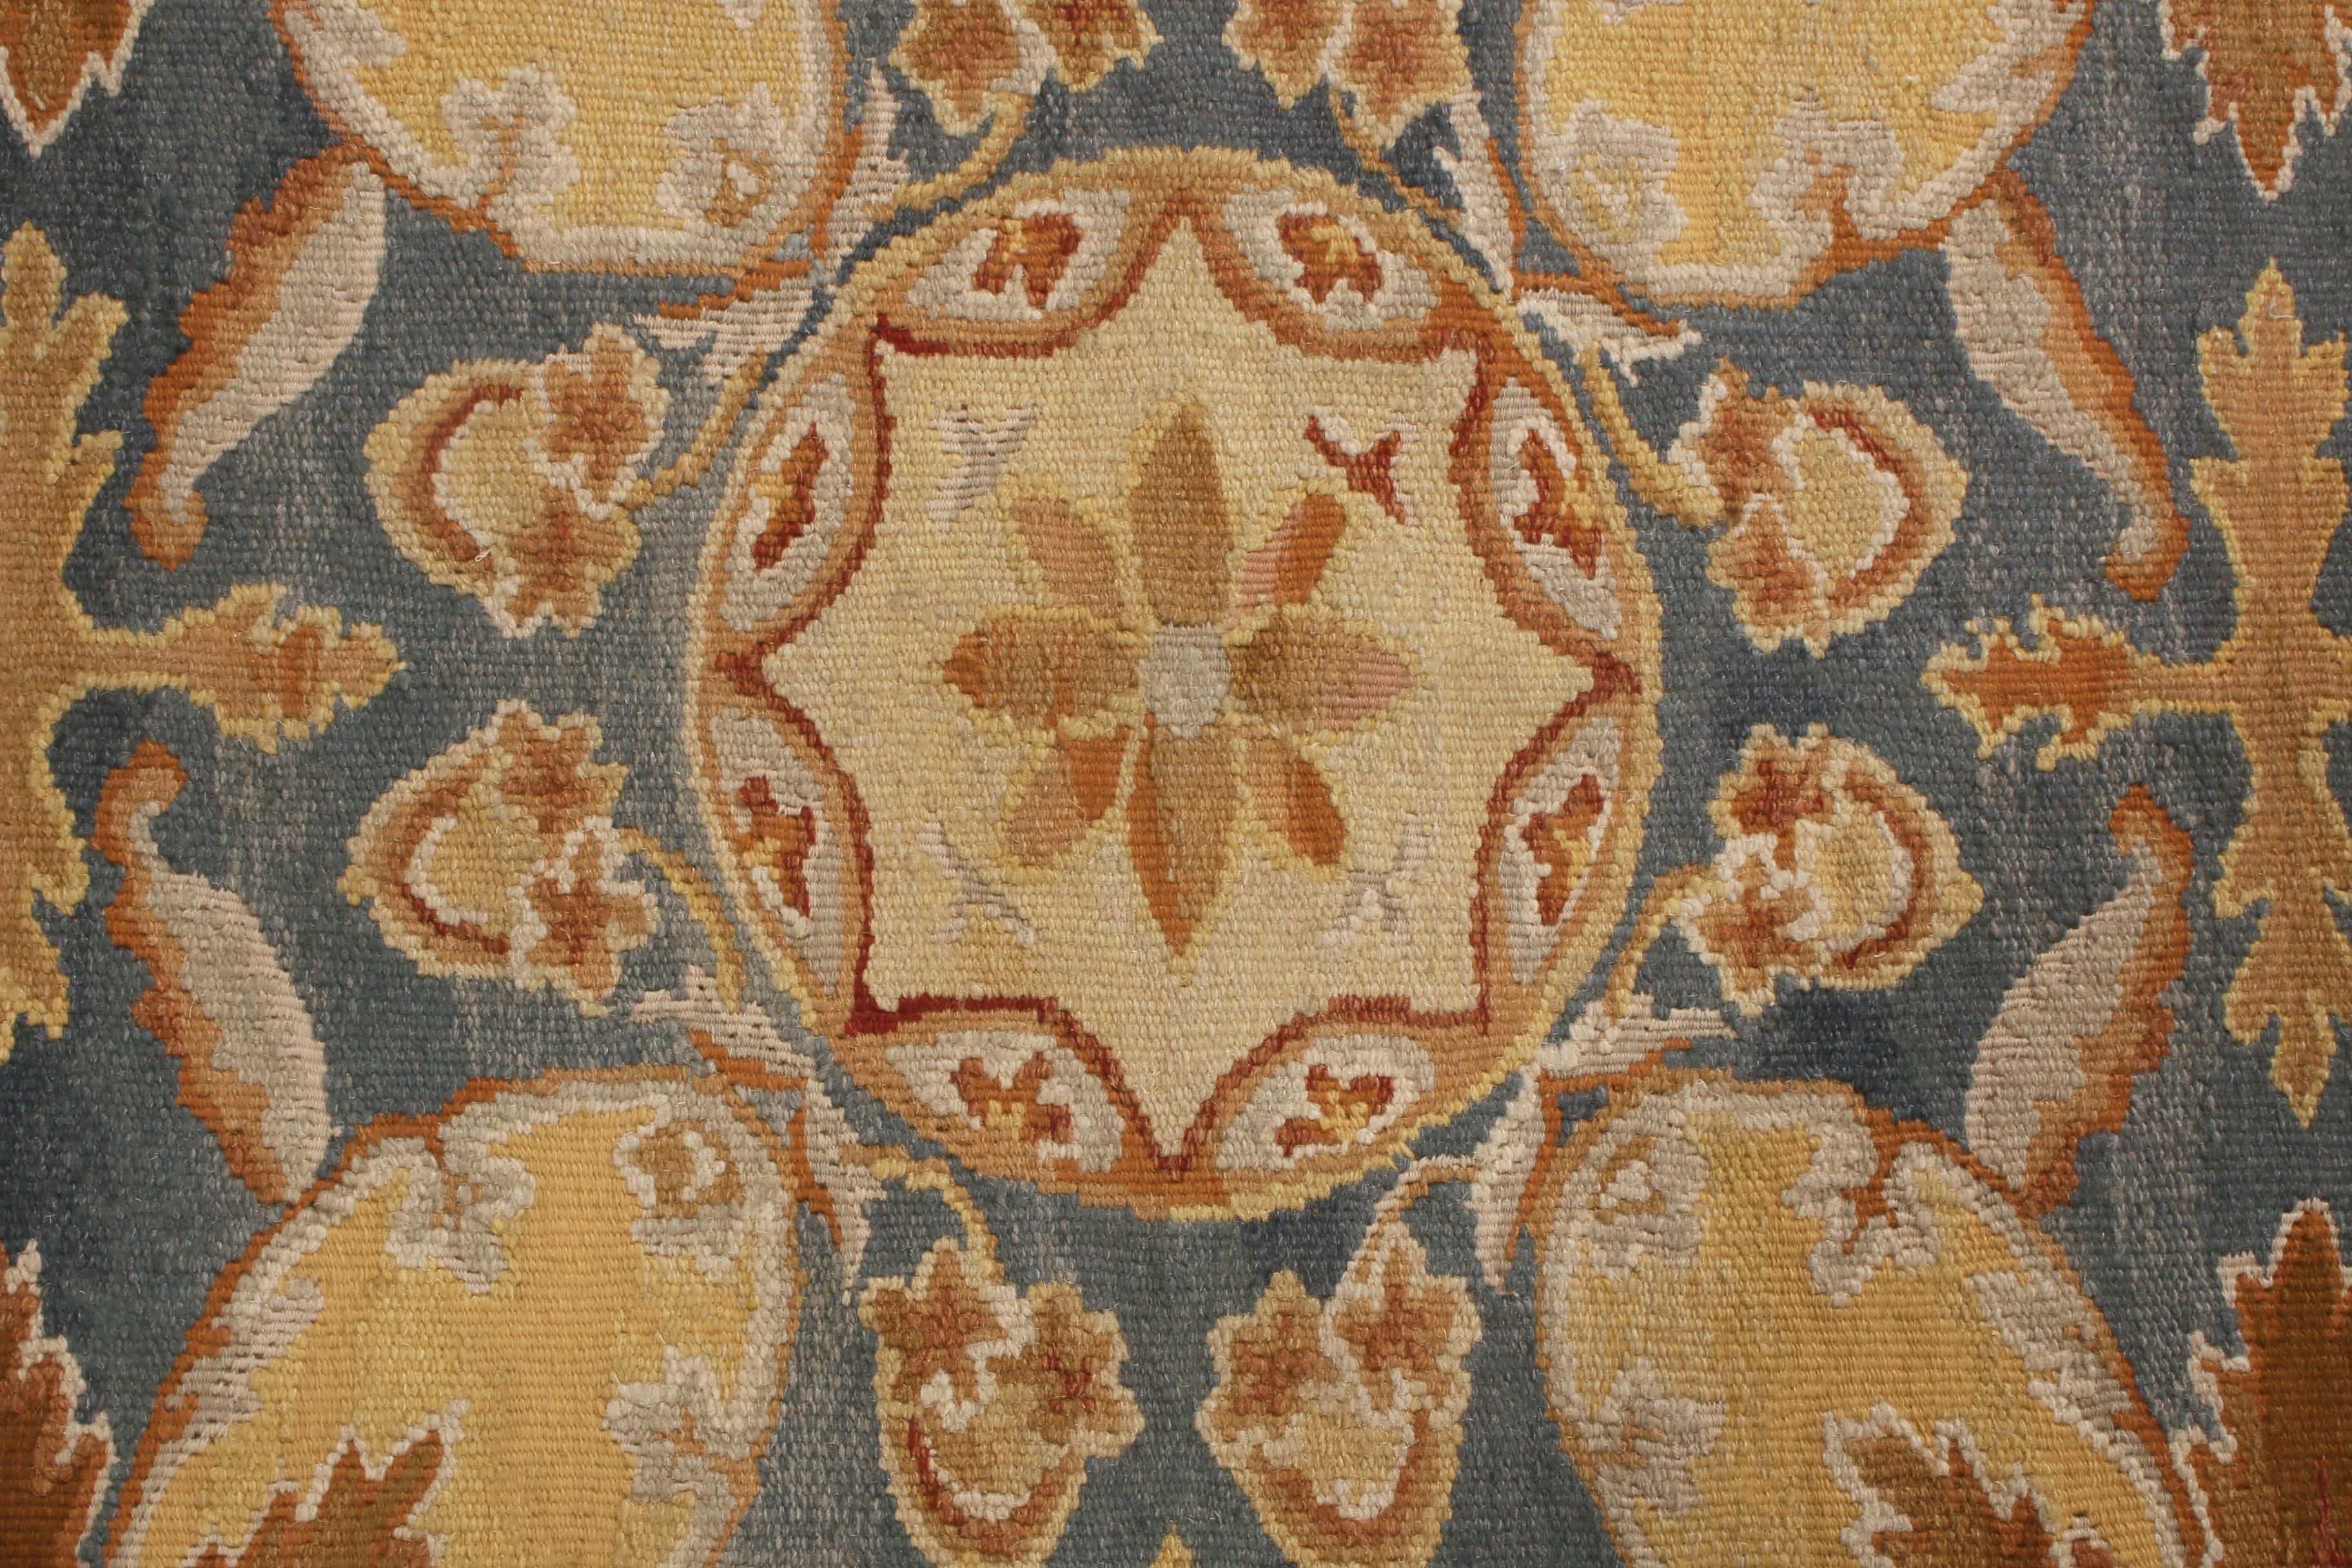 Dieser aus China stammende Teppich aus Schurwolle ist eine Hommage an den Aubusson-Stil des 18. Jahrhunderts mit einem All-Over-Feld-Design und ausgeprägten modernen Farben. Handgeknüpft aus hochwertiger Wolle, werden die mehrfarbigen Schattierungen